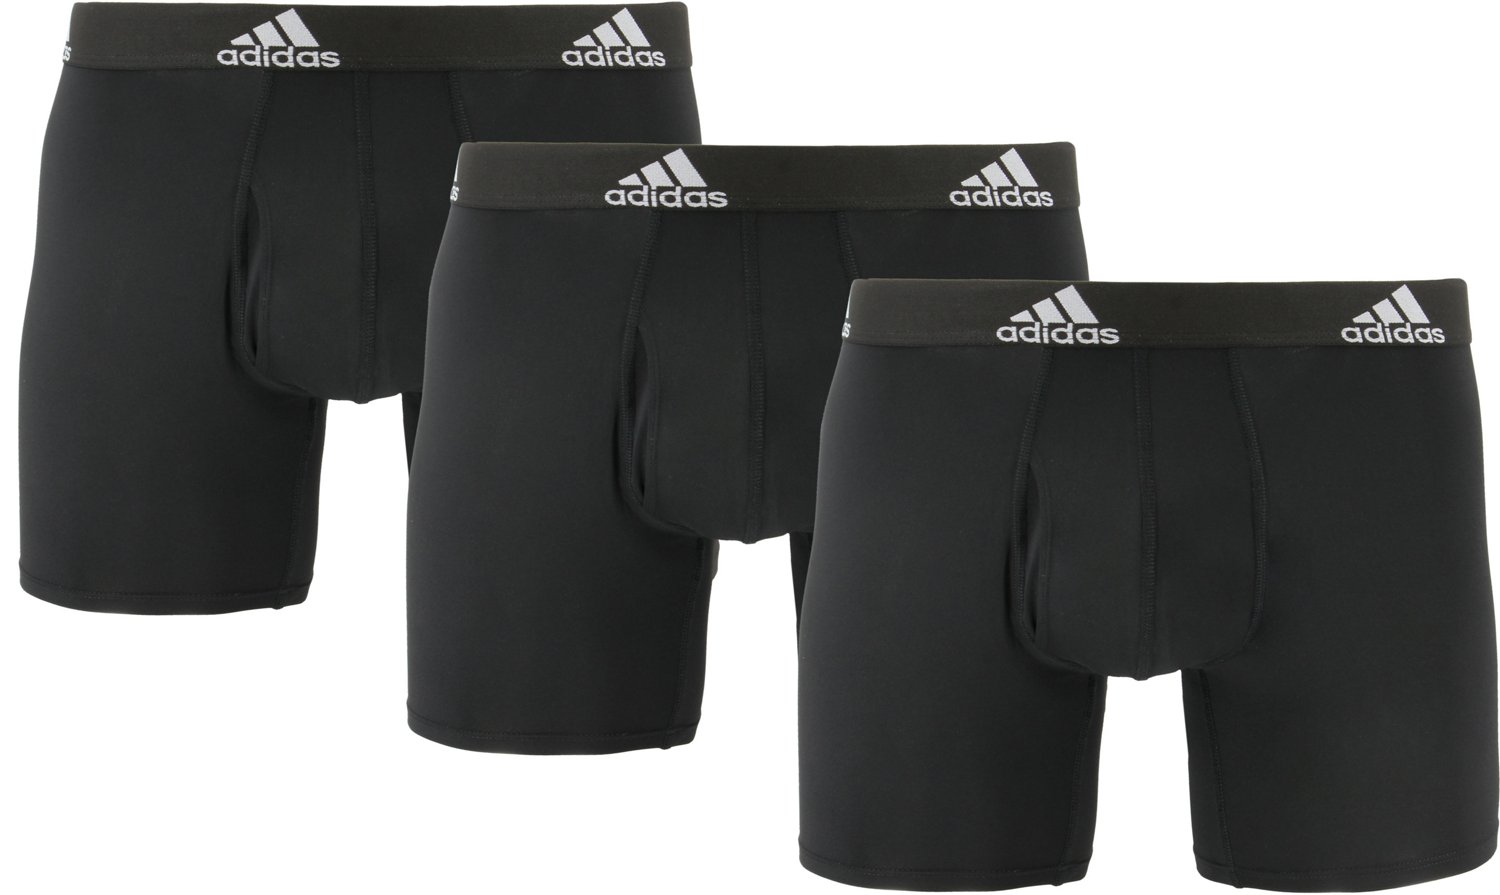 adidas Men's Performance Trunk Underwear (3-Pack), Black/Team